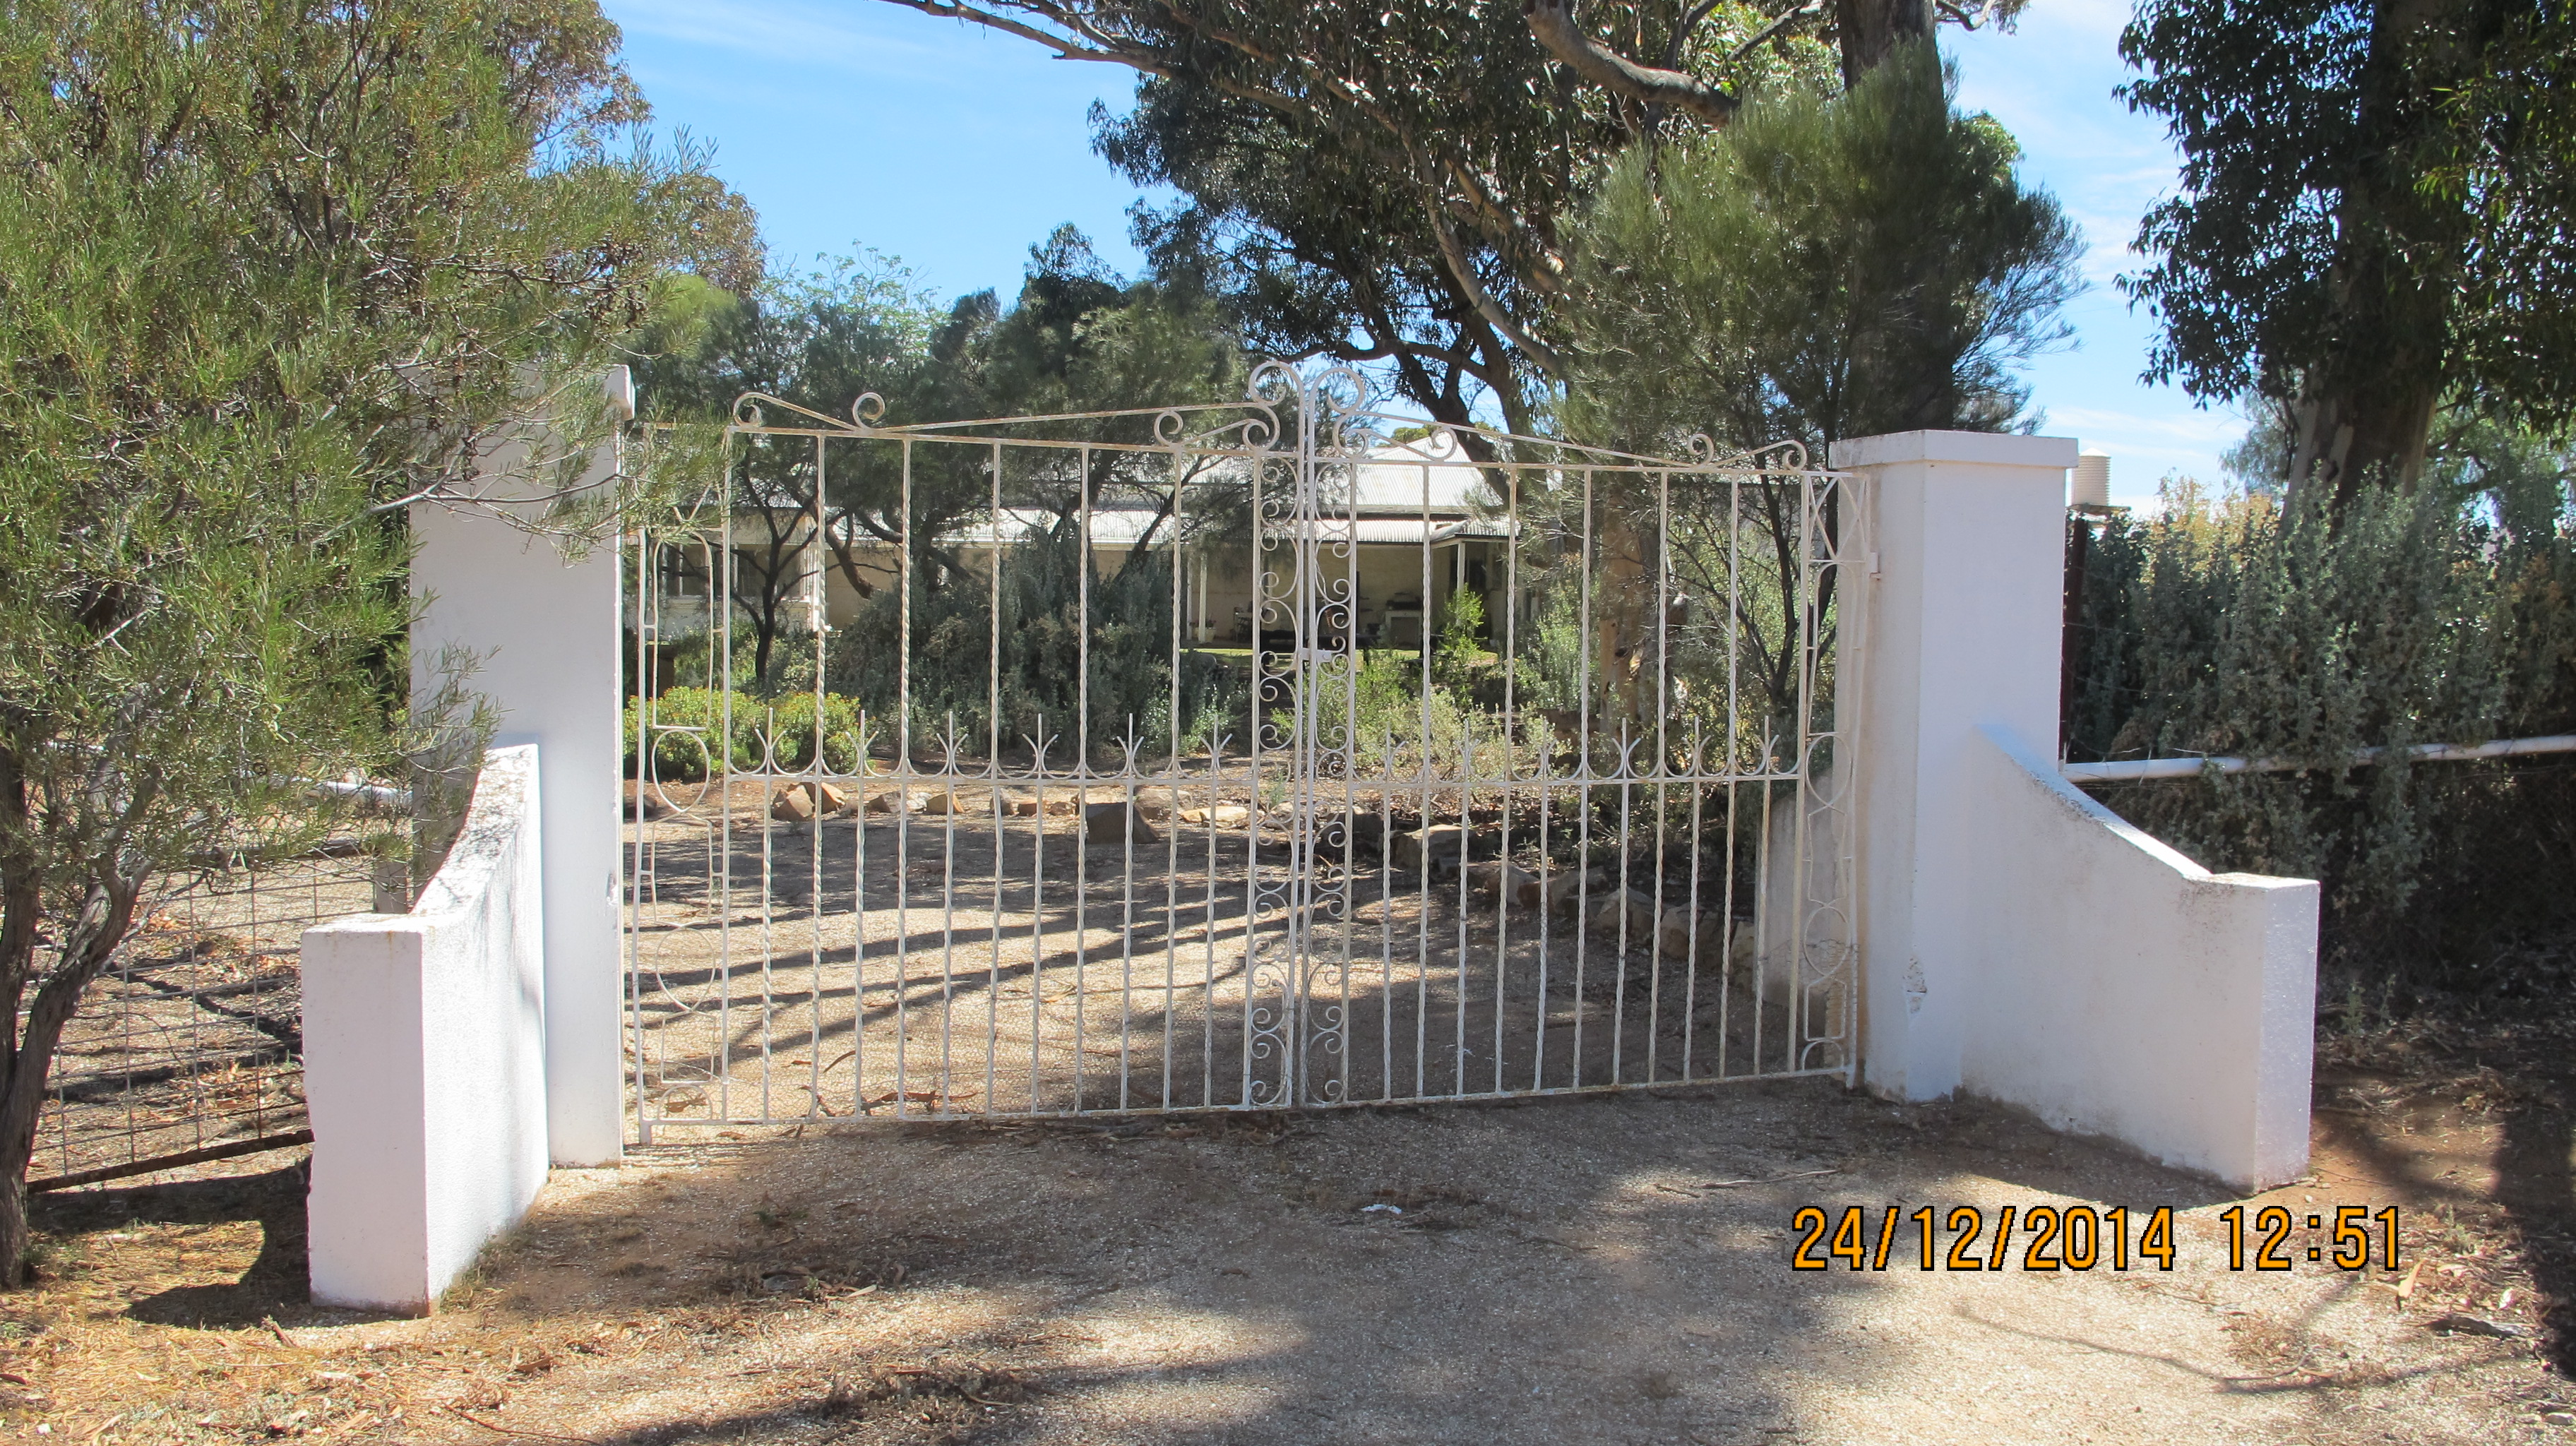 Homestead garden front gate.